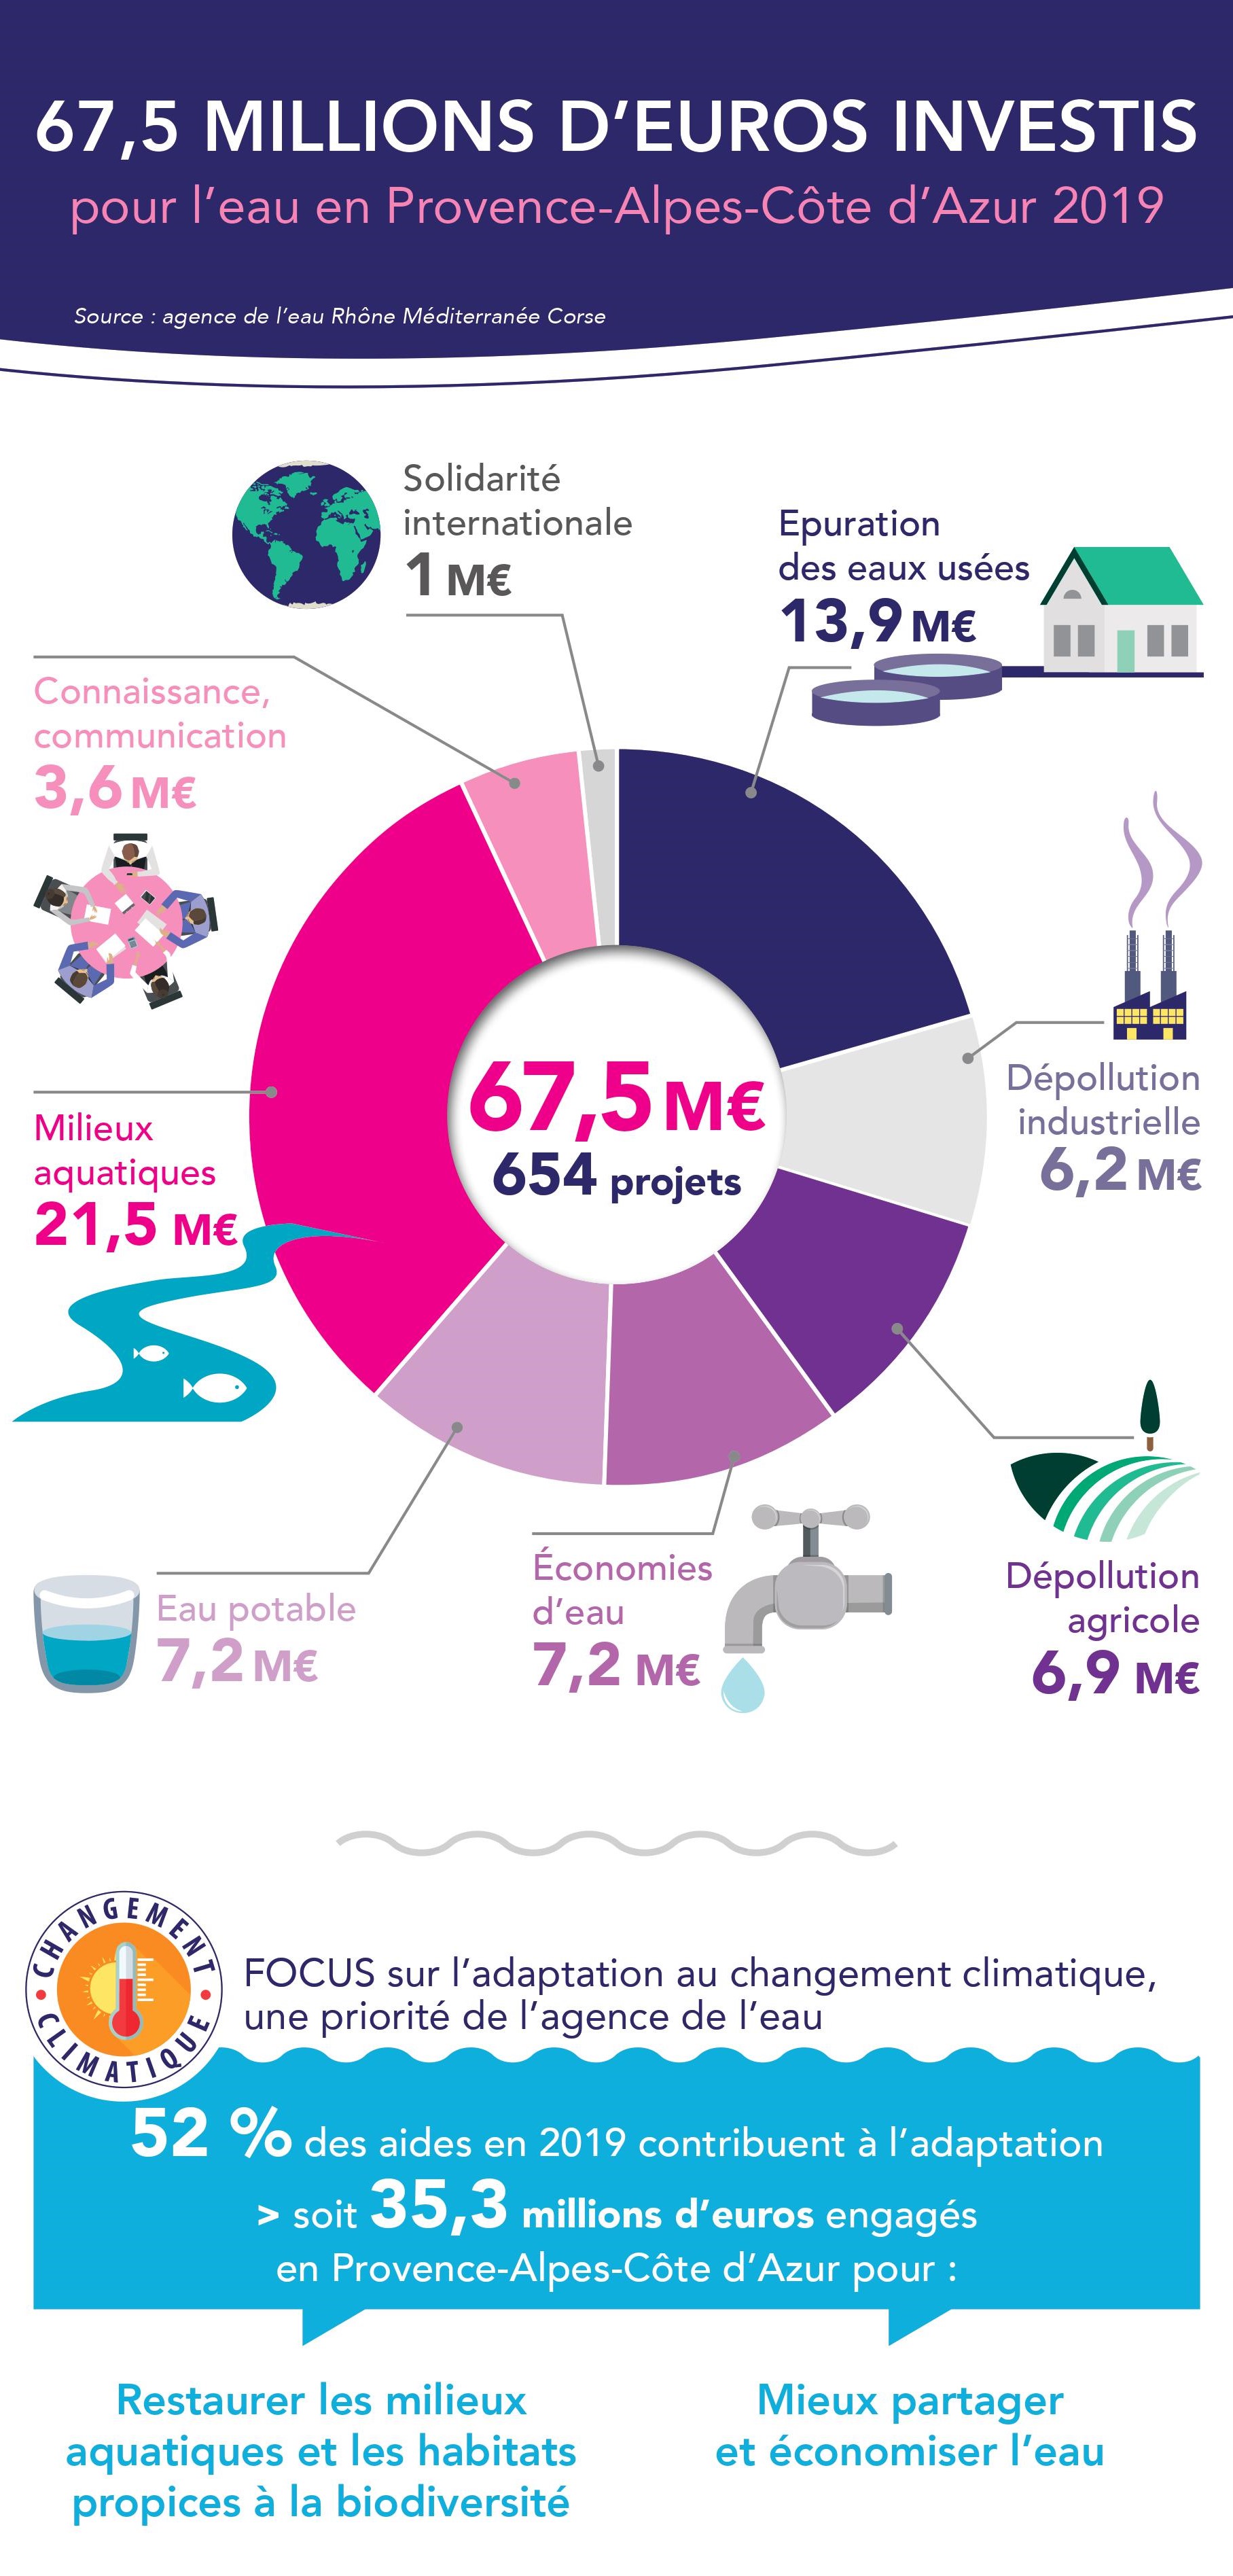 67,5 MILLIONS D’EUROS INVESTIS pour l’eau en Provence-Alpes-Côte d’Azur 2019